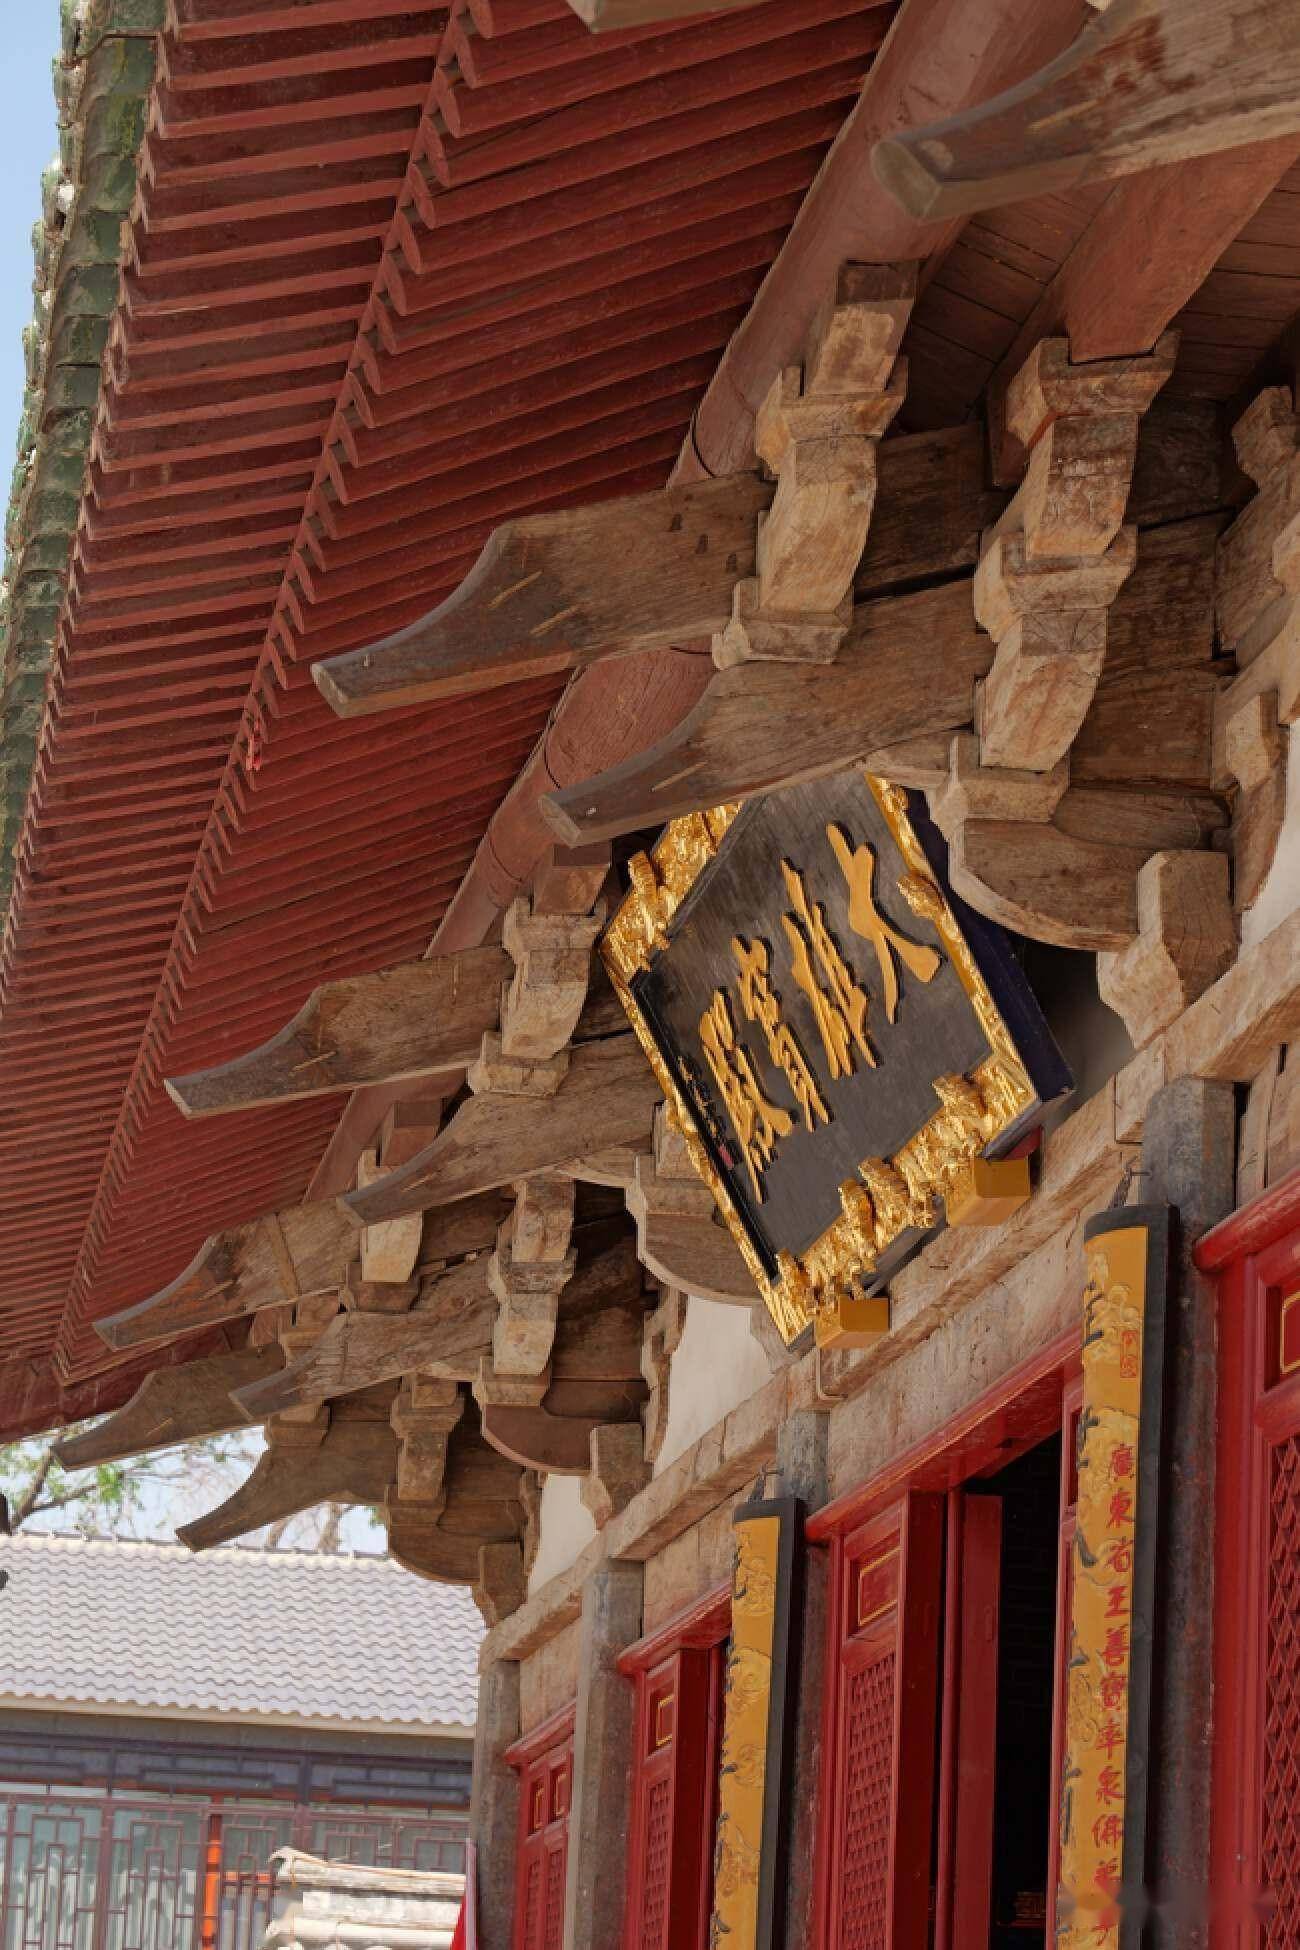 温州景德寺图片